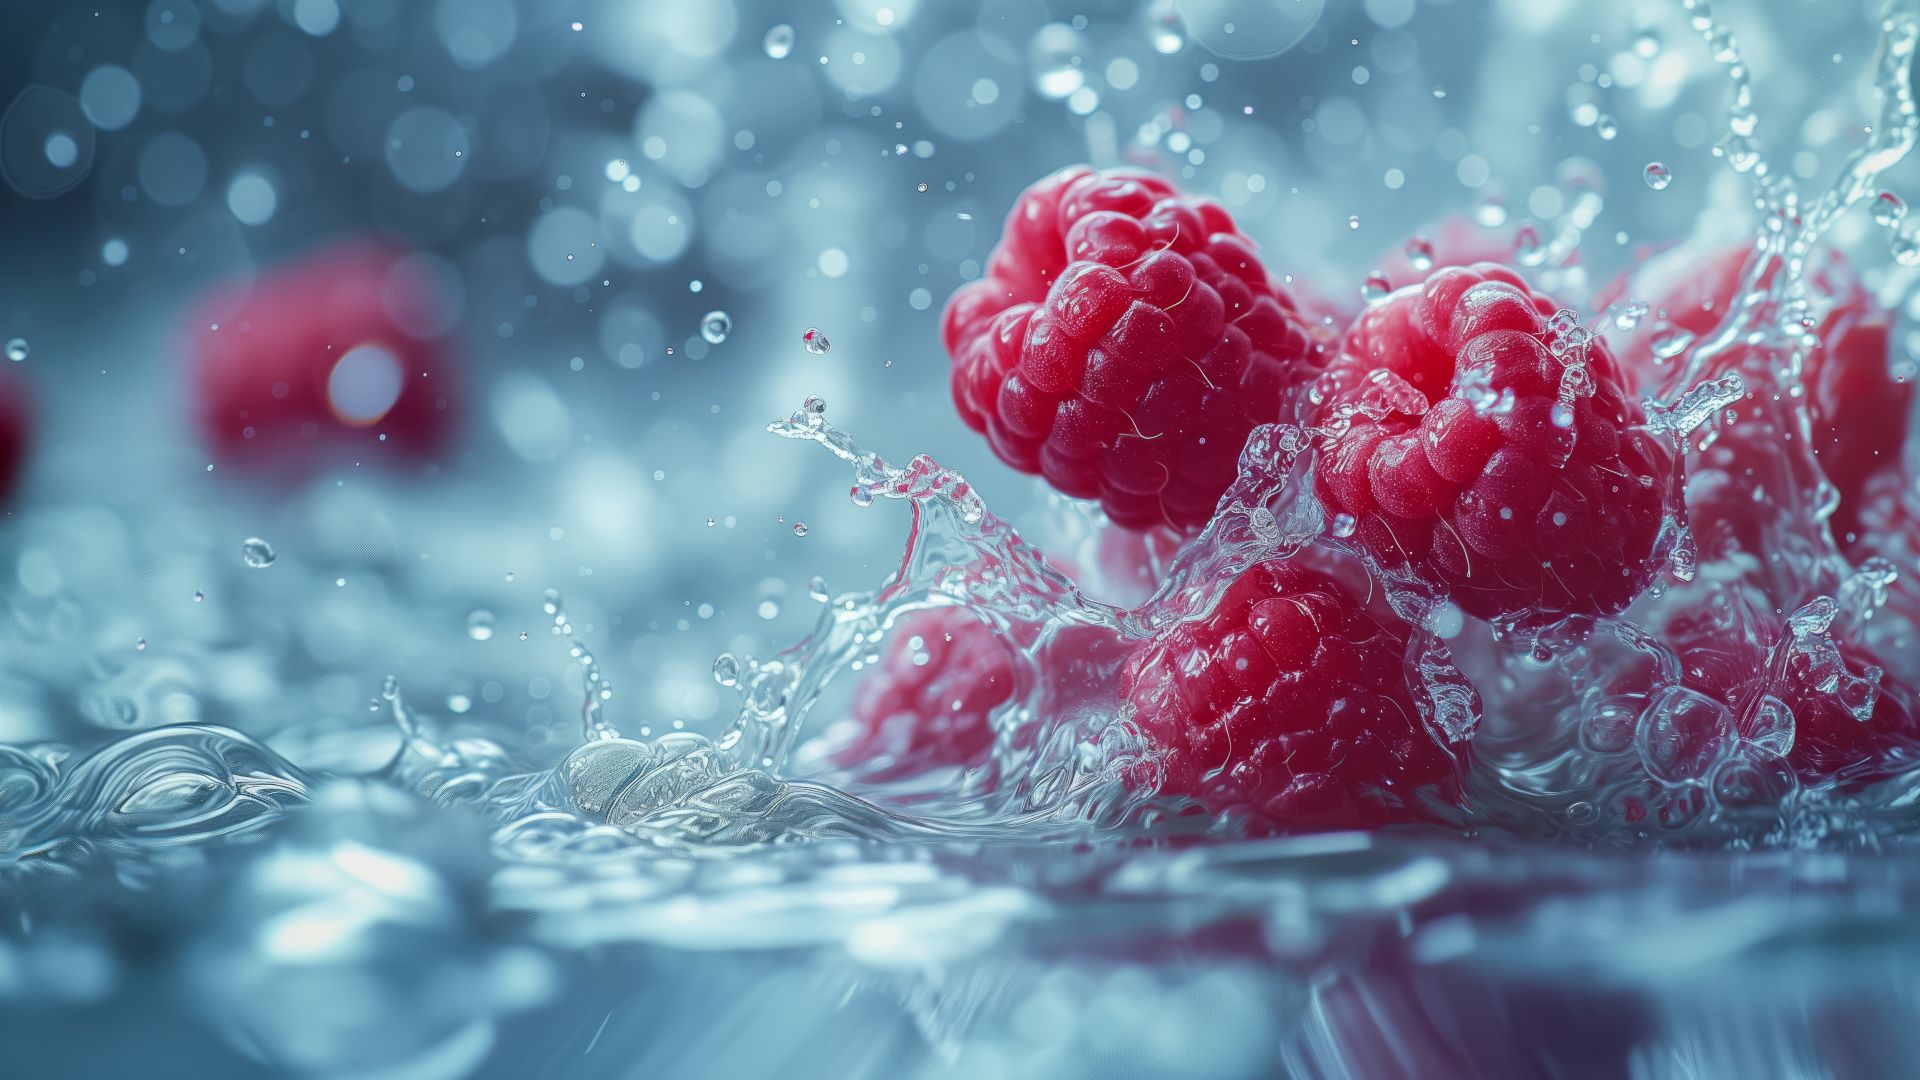 Raspberry, water, red (horizontal)